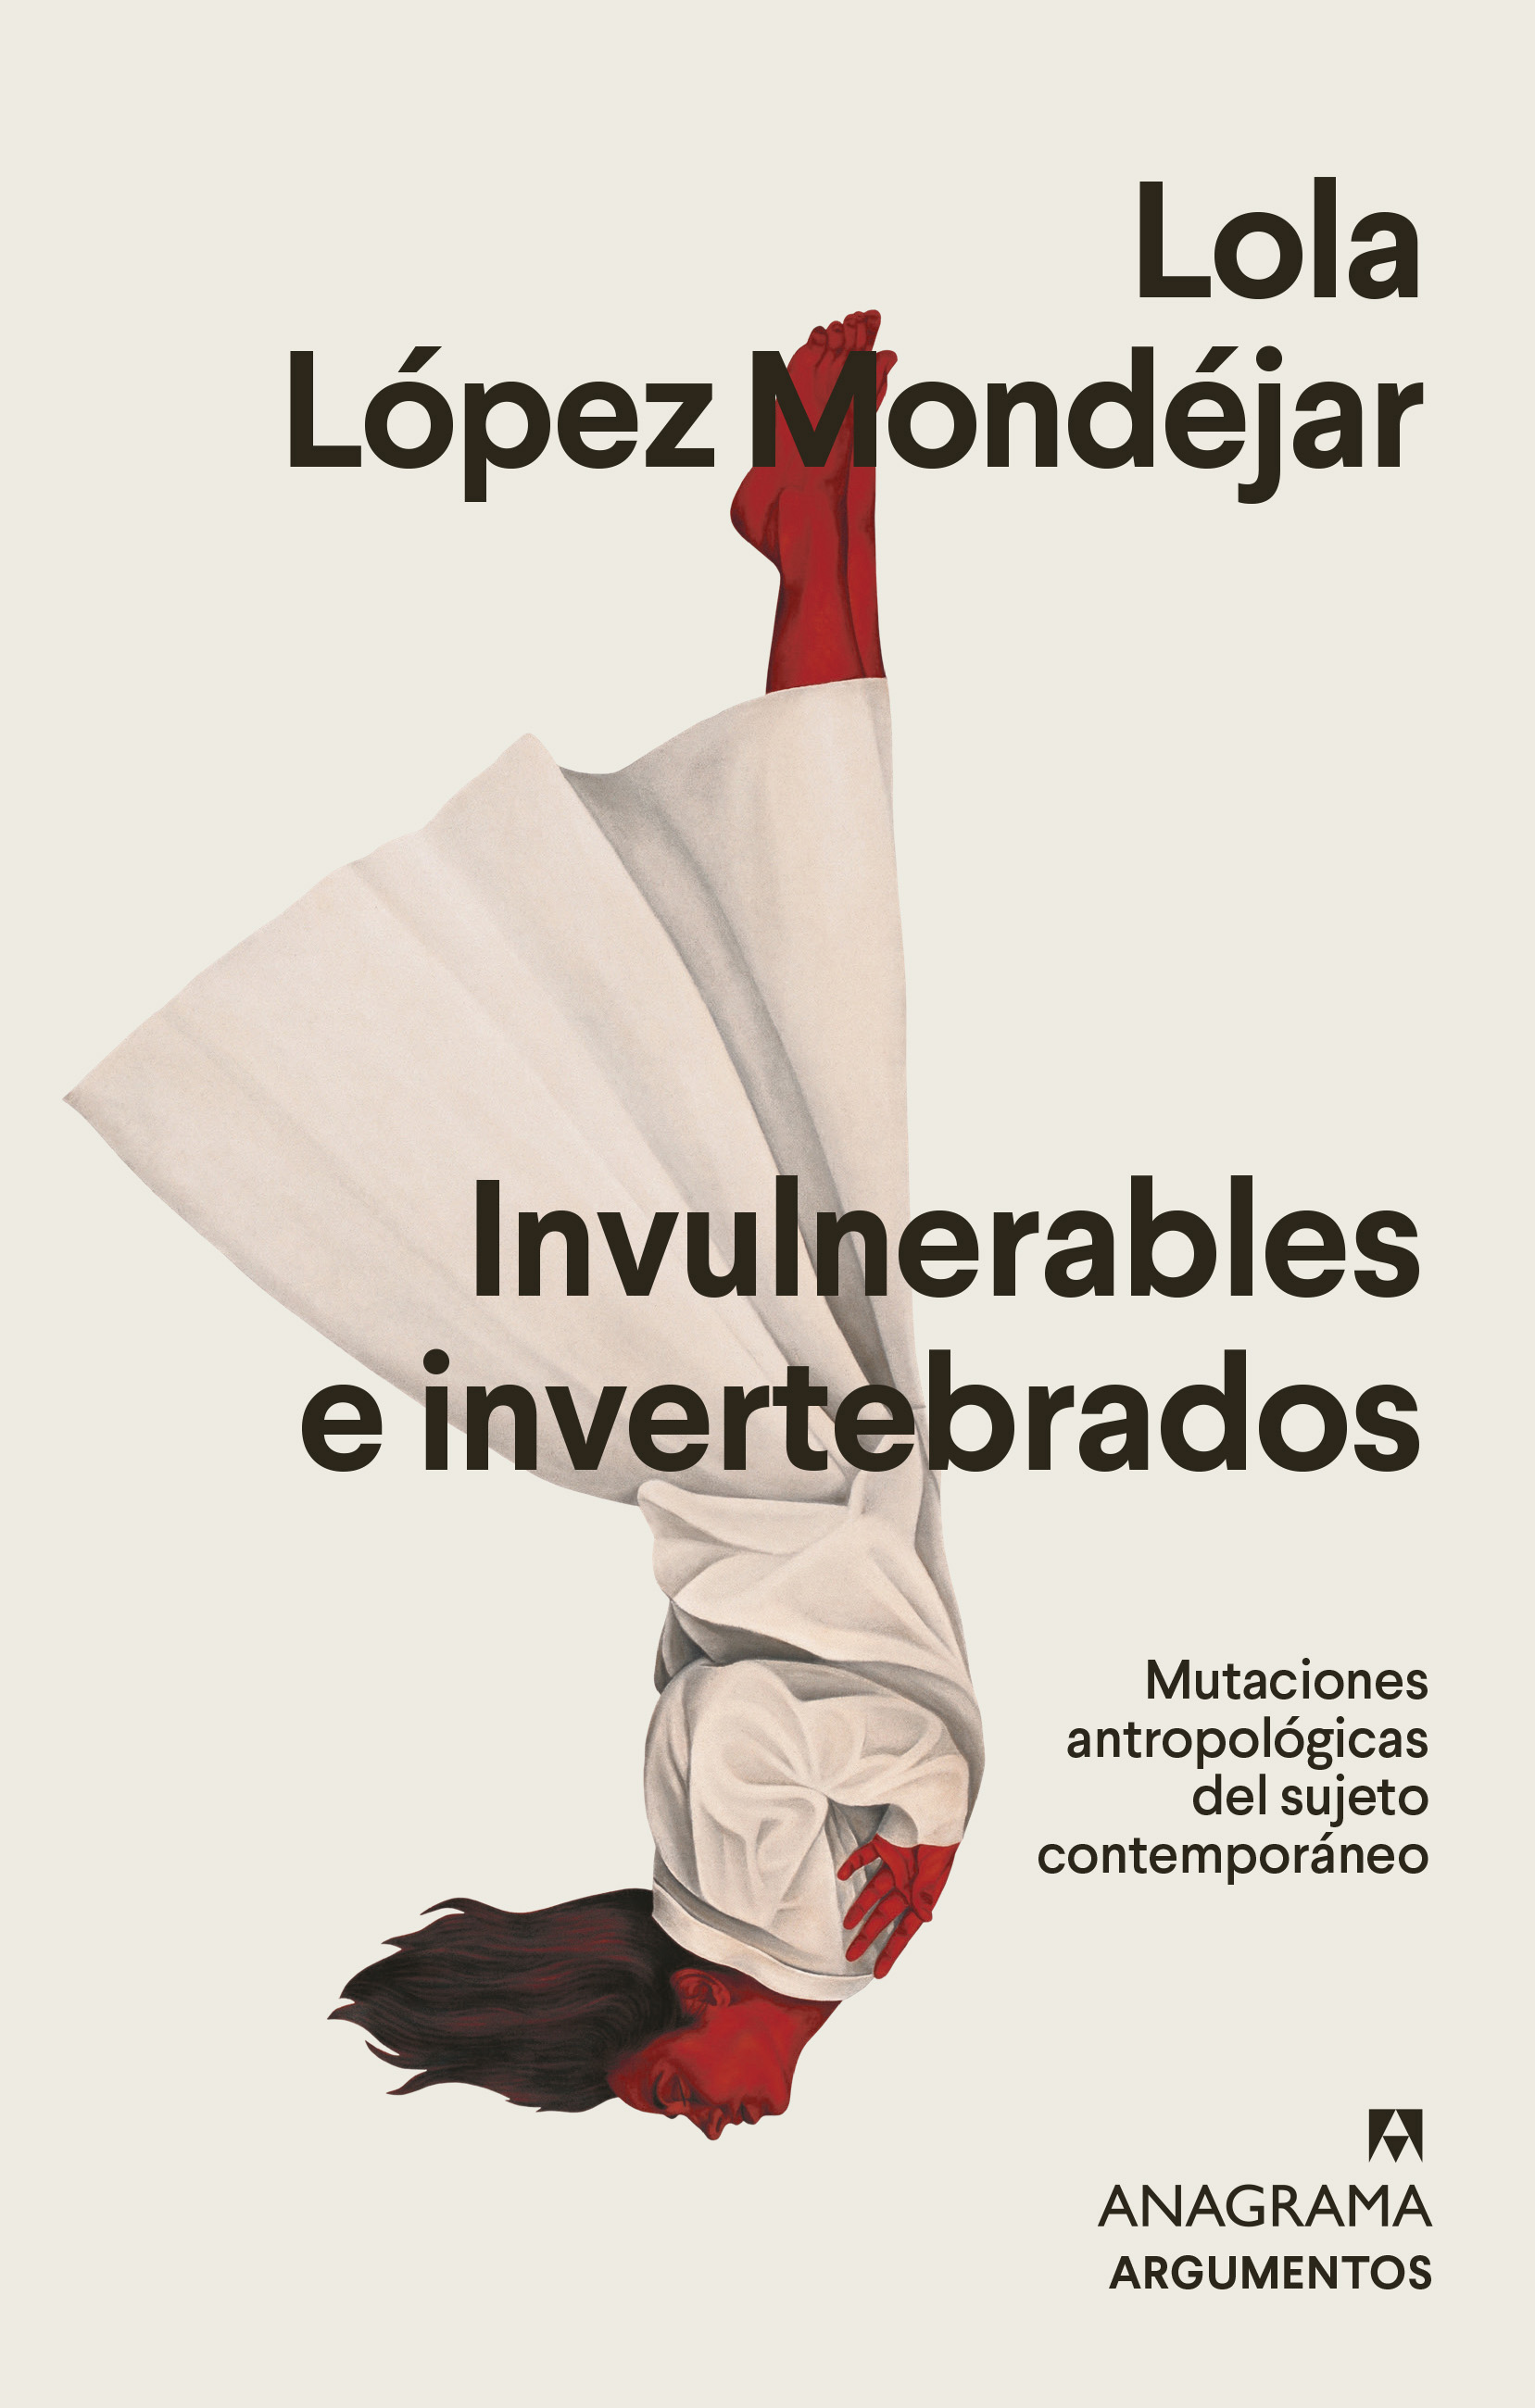 Presentación del libro 'Invulnerables e invertebrados' Lola López Mondéjar